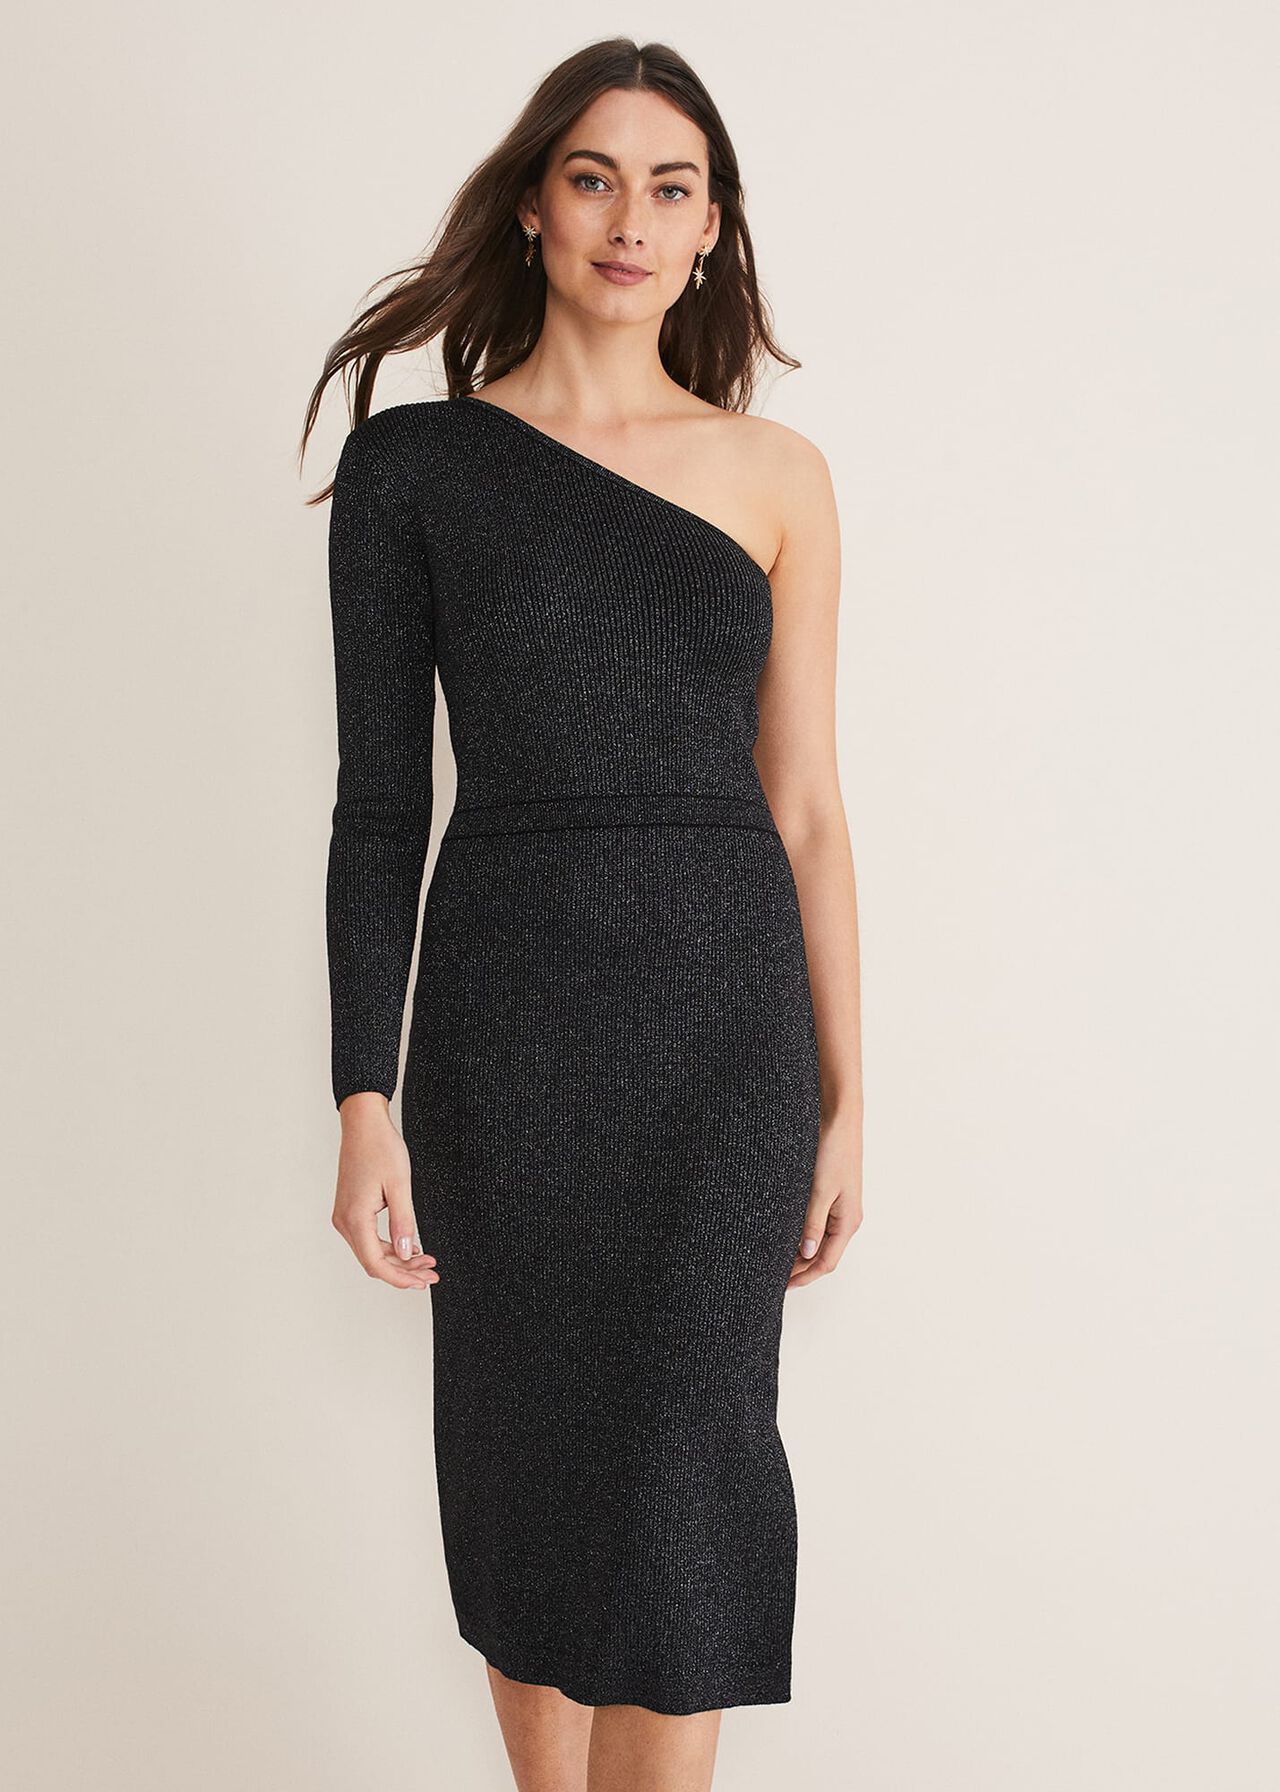 Zemira One Shoulder Lurex Knitted Dress | Phase Eight (UK)